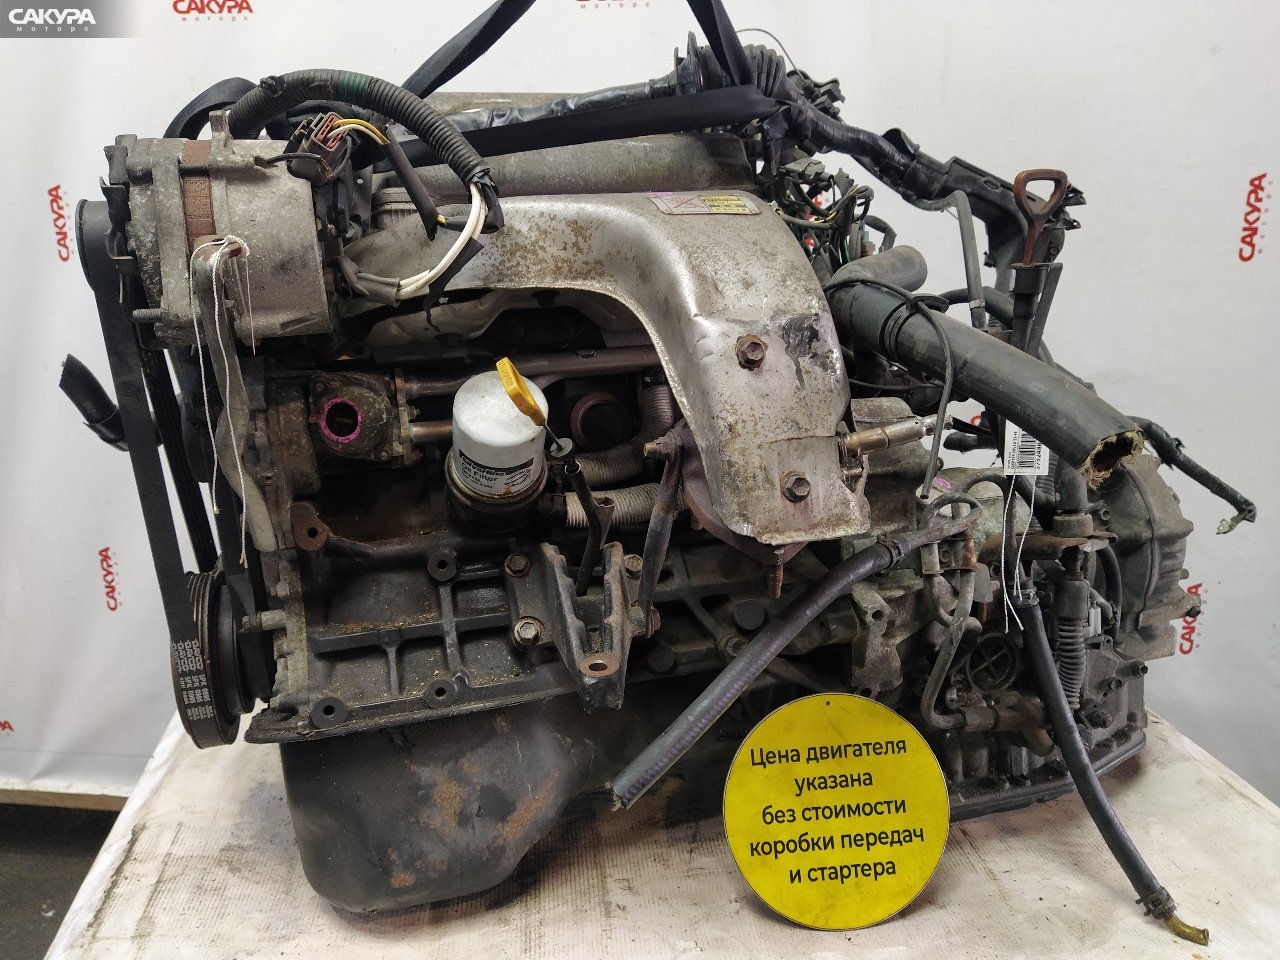 Двигатель Toyota Scepter SXV10 5S-FE: купить в Сакура Красноярск.